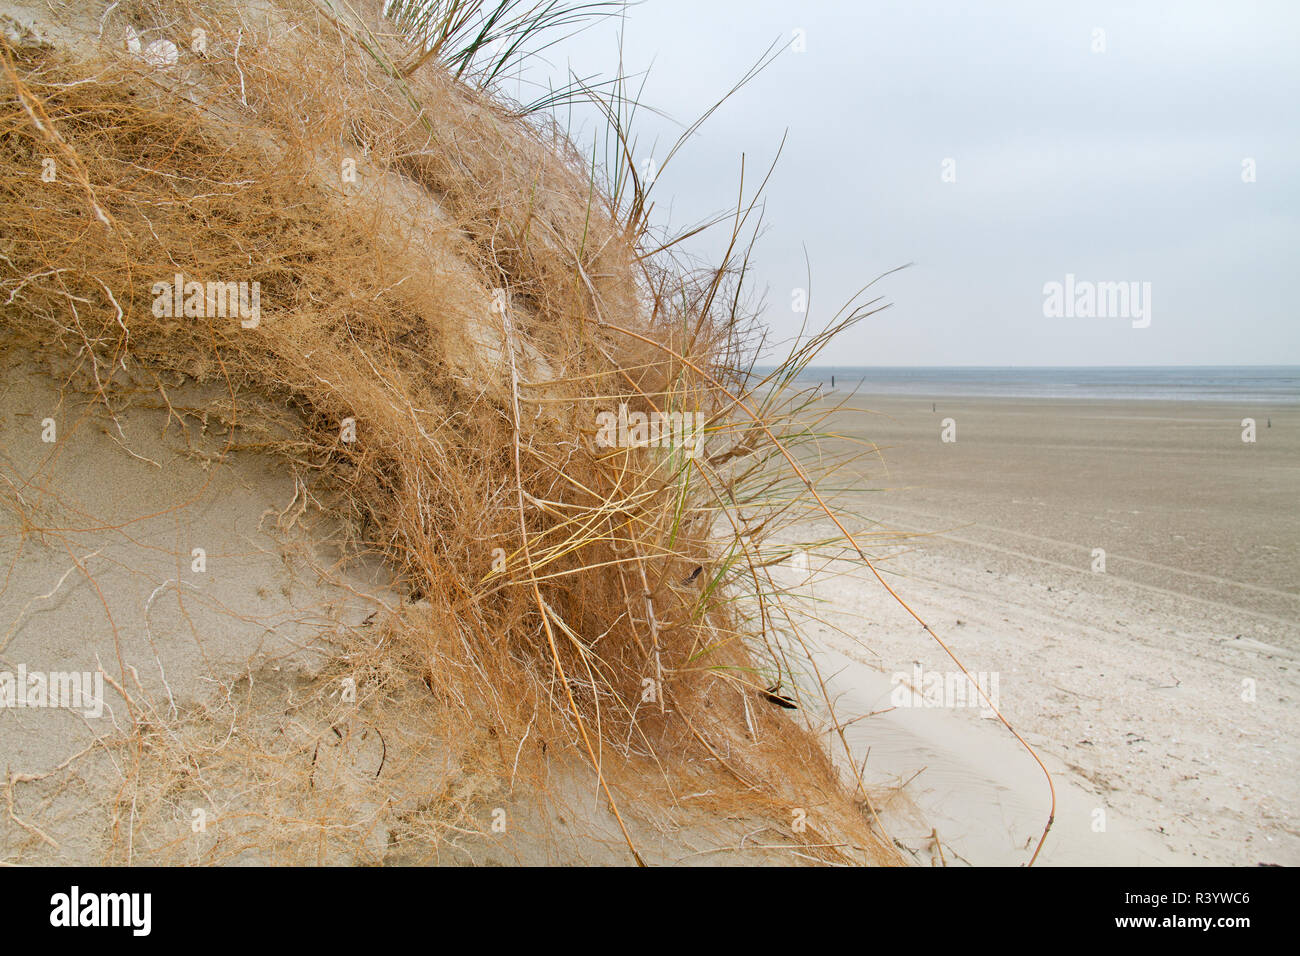 Umfangreiche u-root System der Marram Gras wird sichtbar nach Erosion einer Düne Stockfoto